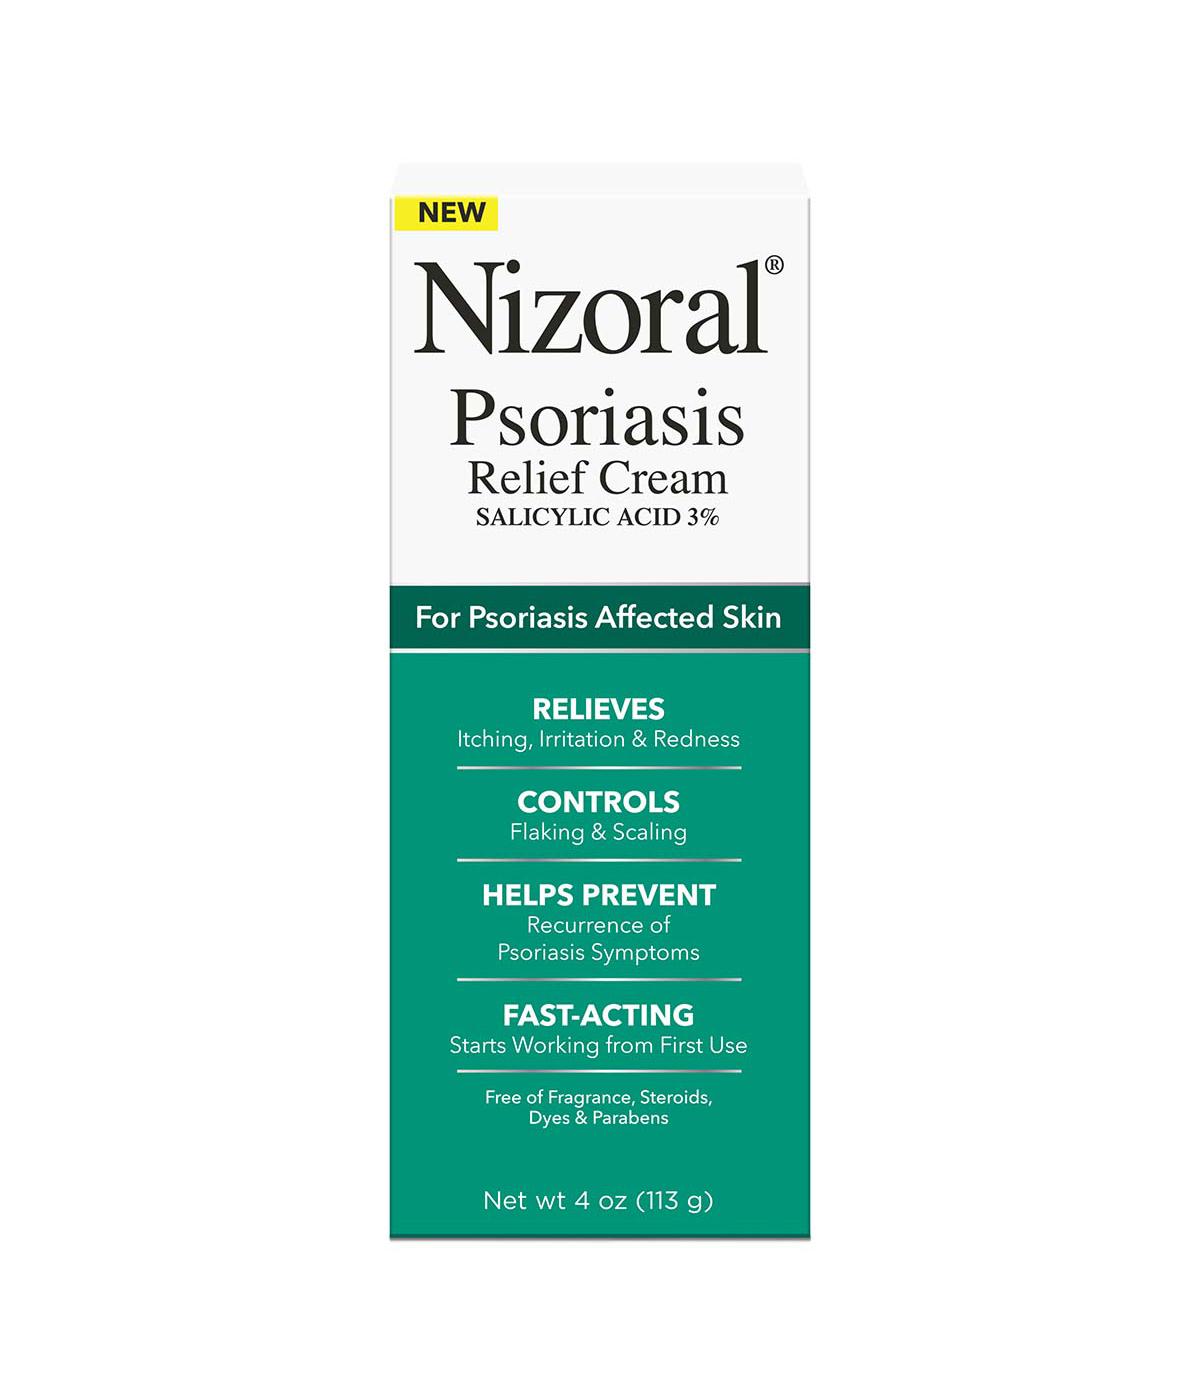 Nizoral Psoriasis Relief Cream; image 1 of 3